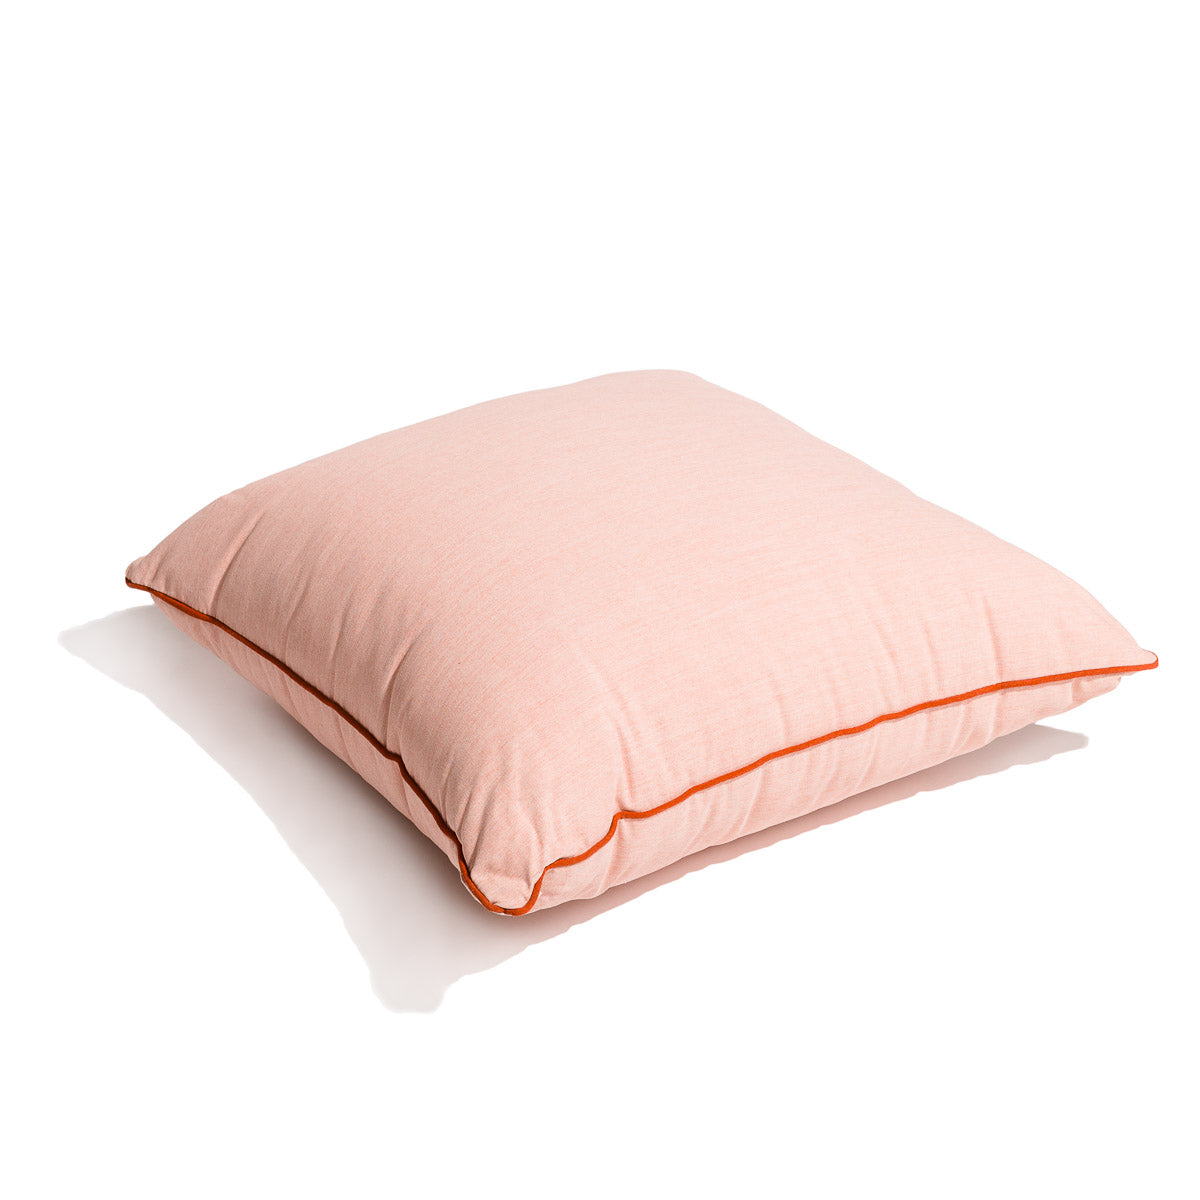 The Euro Throw Pillow - Rivie Pink Euro Throw Pillow Business & Pleasure Co. 